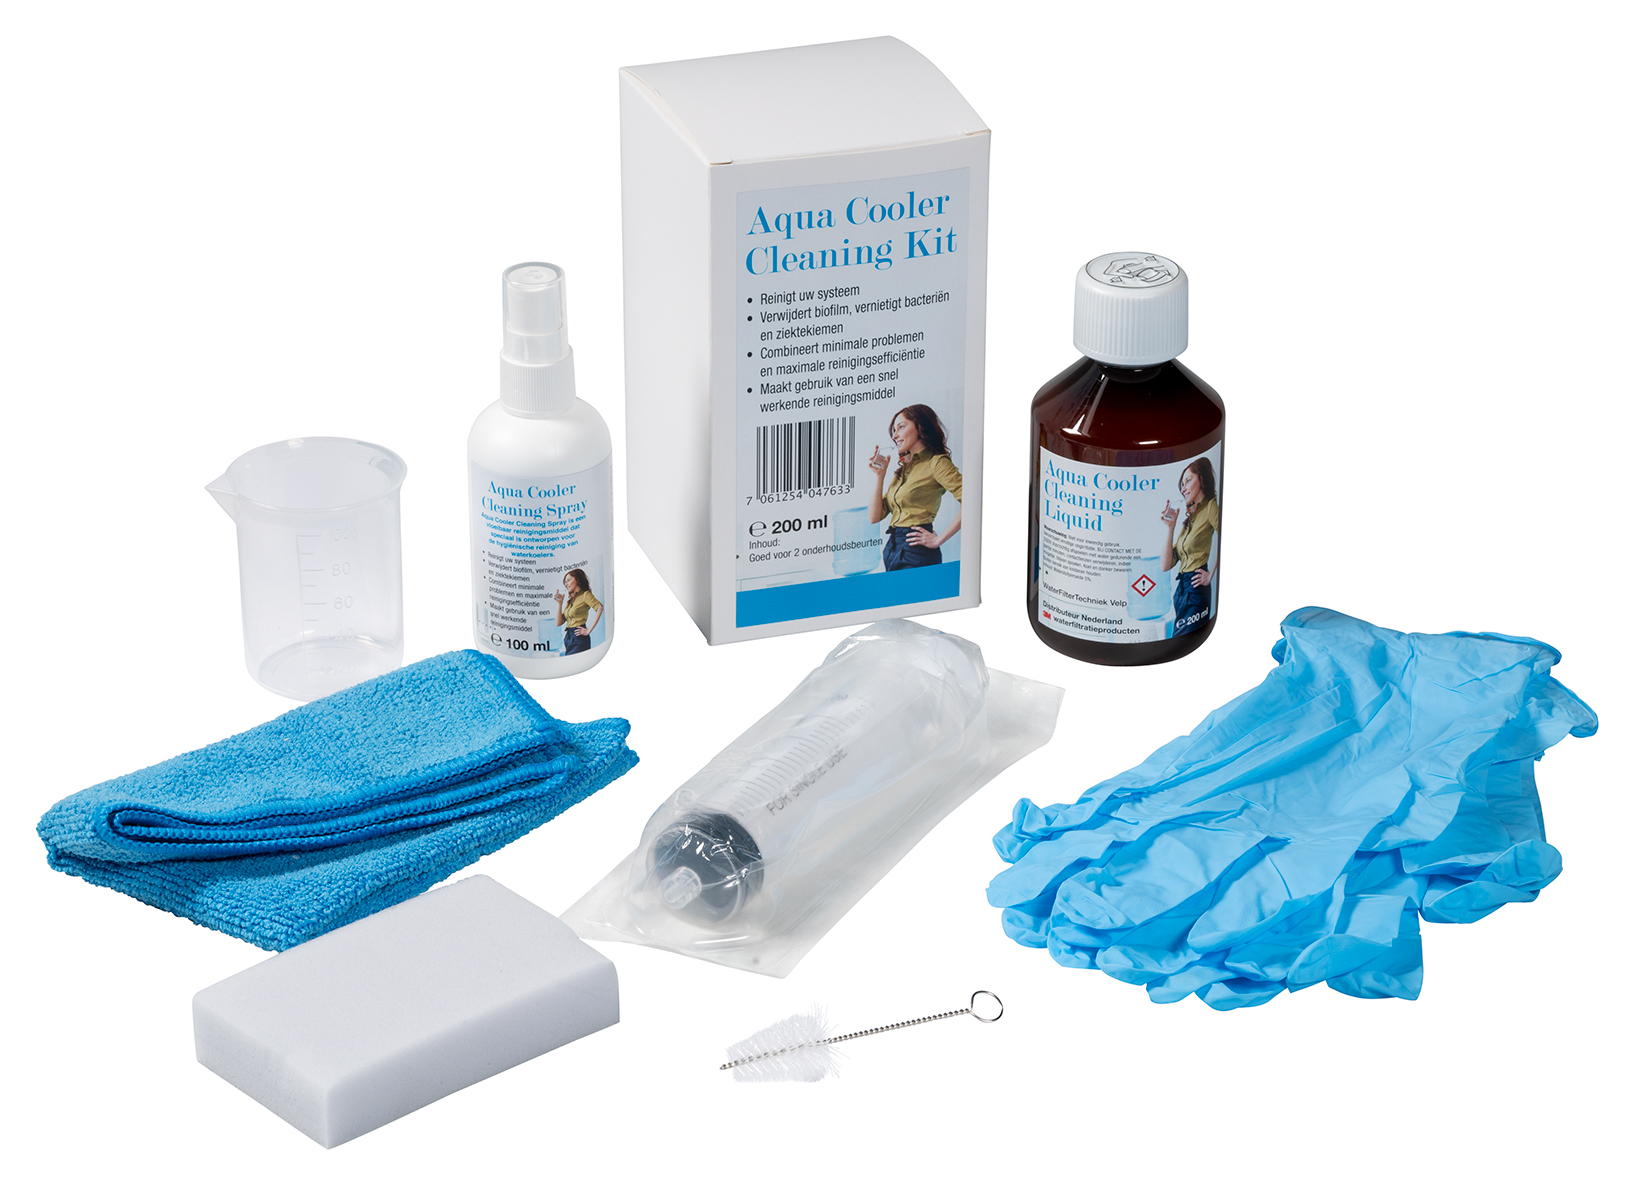 Aqua-cooler-cleaning-kit